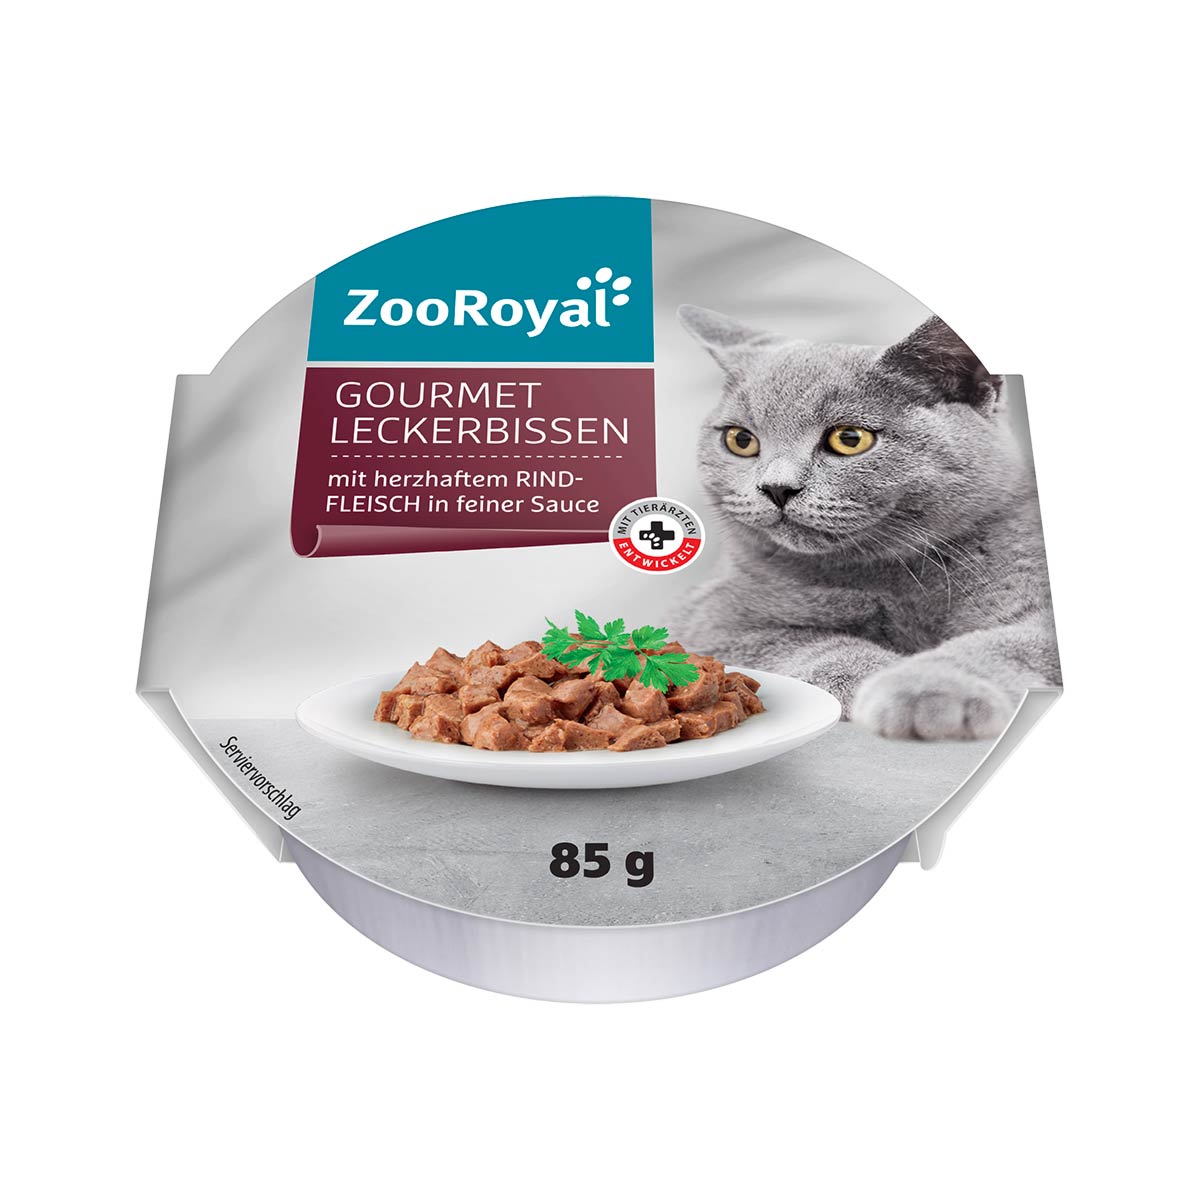 ZooRoyal Gourmet Leckerbissen mit herzhaftem Rindfleisch in feiner Sauce 12x85g von ZooRoyal